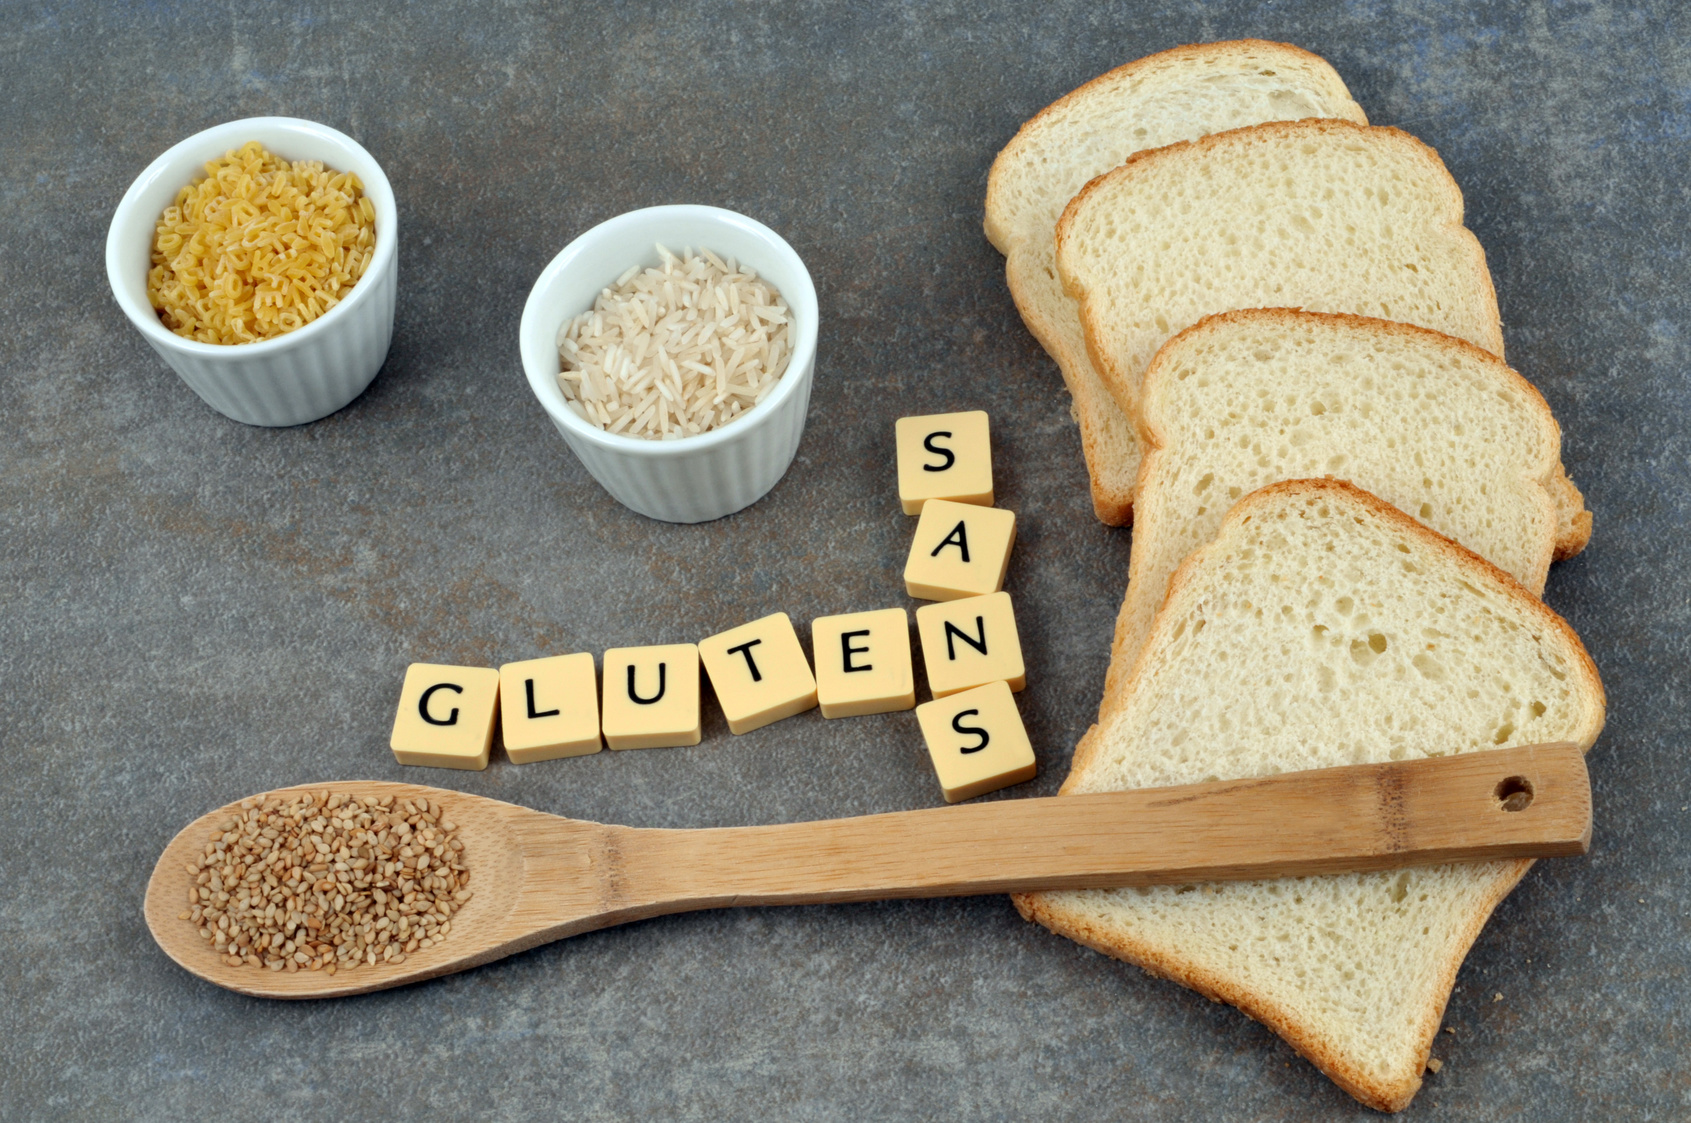 Avec ou sans gluten : de quoi parle t’on ?